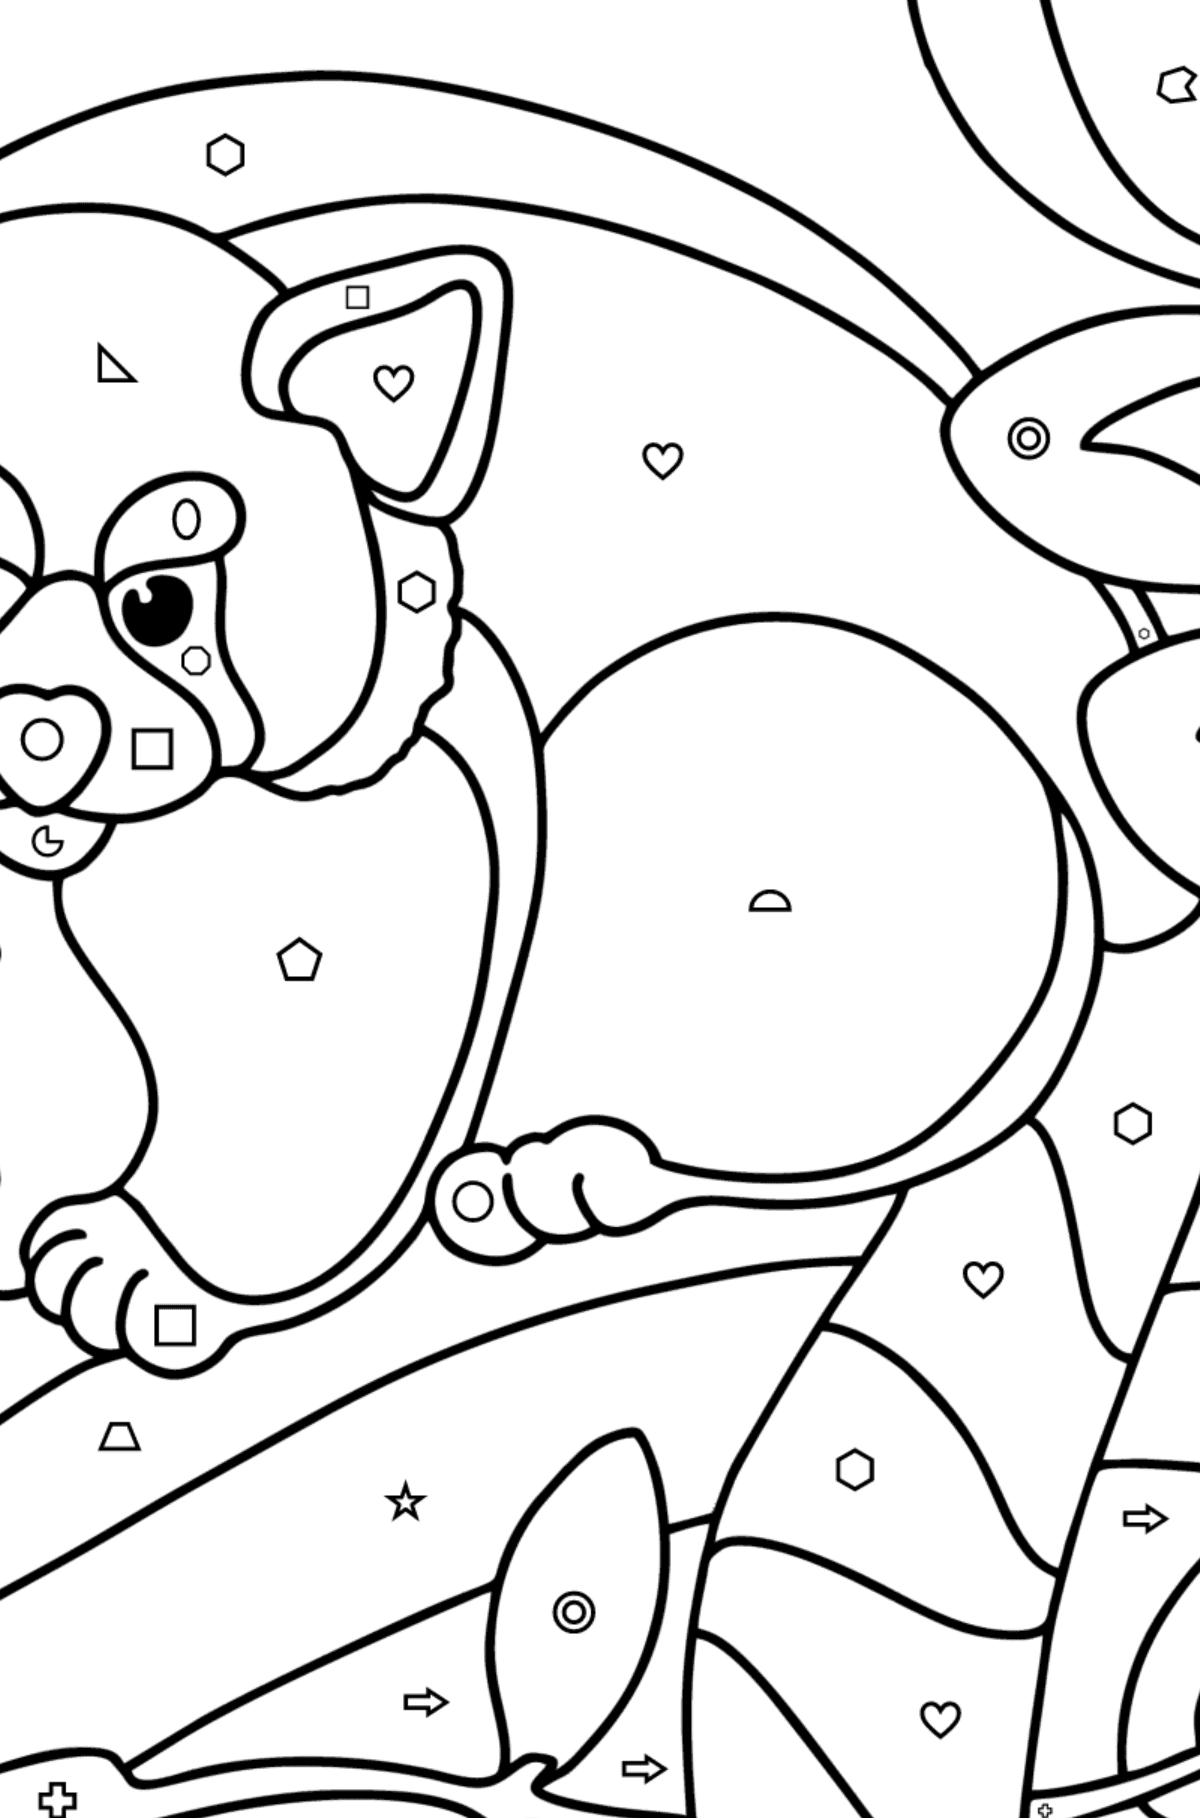 Dibujo de Panda rojo para colorear - Colorear por Formas Geométricas para Niños